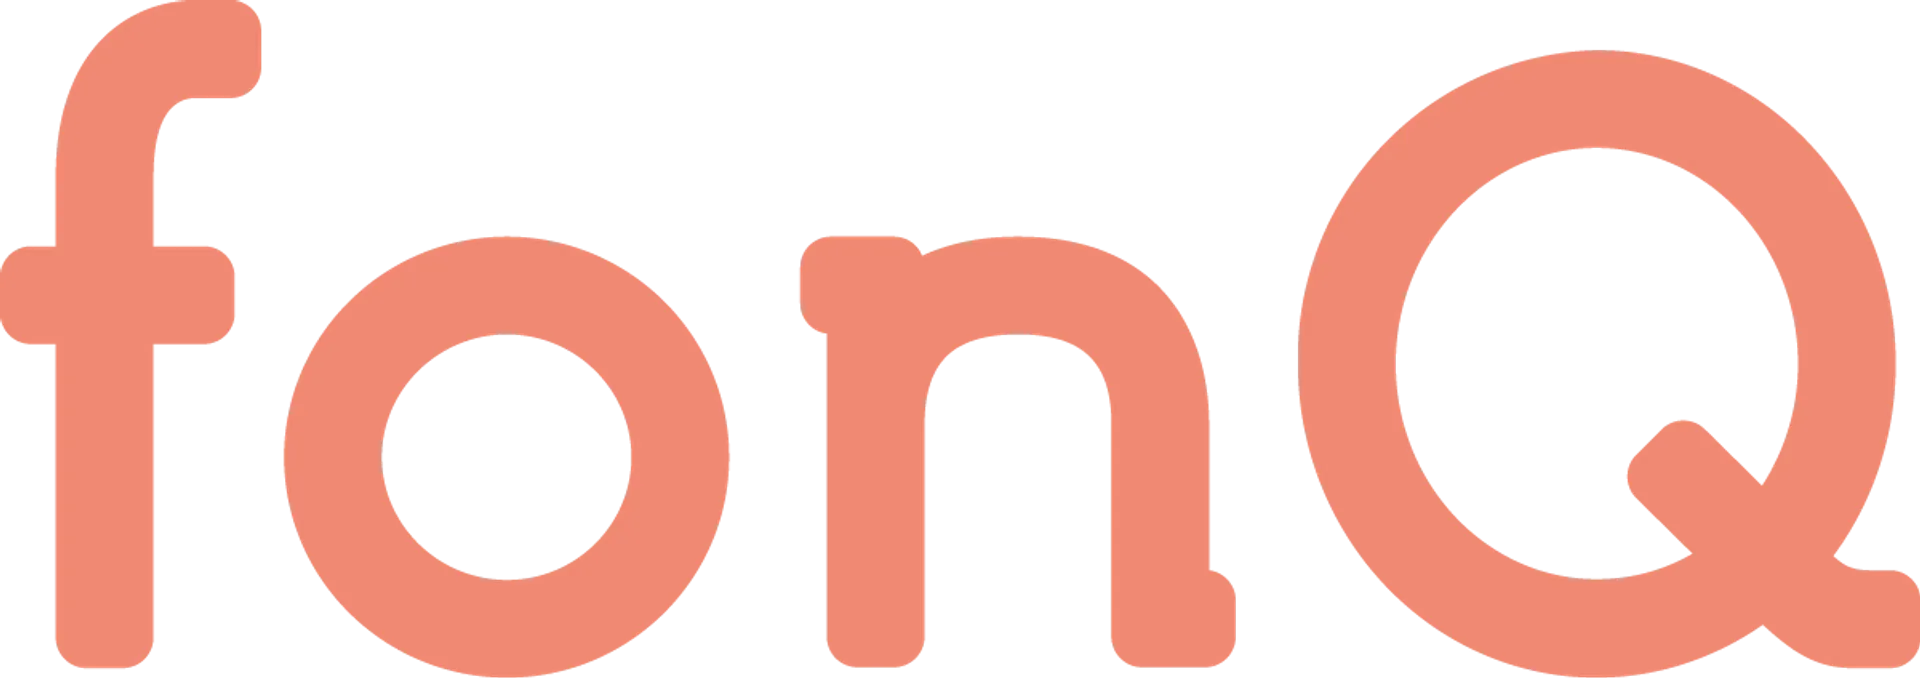 FONQ logo